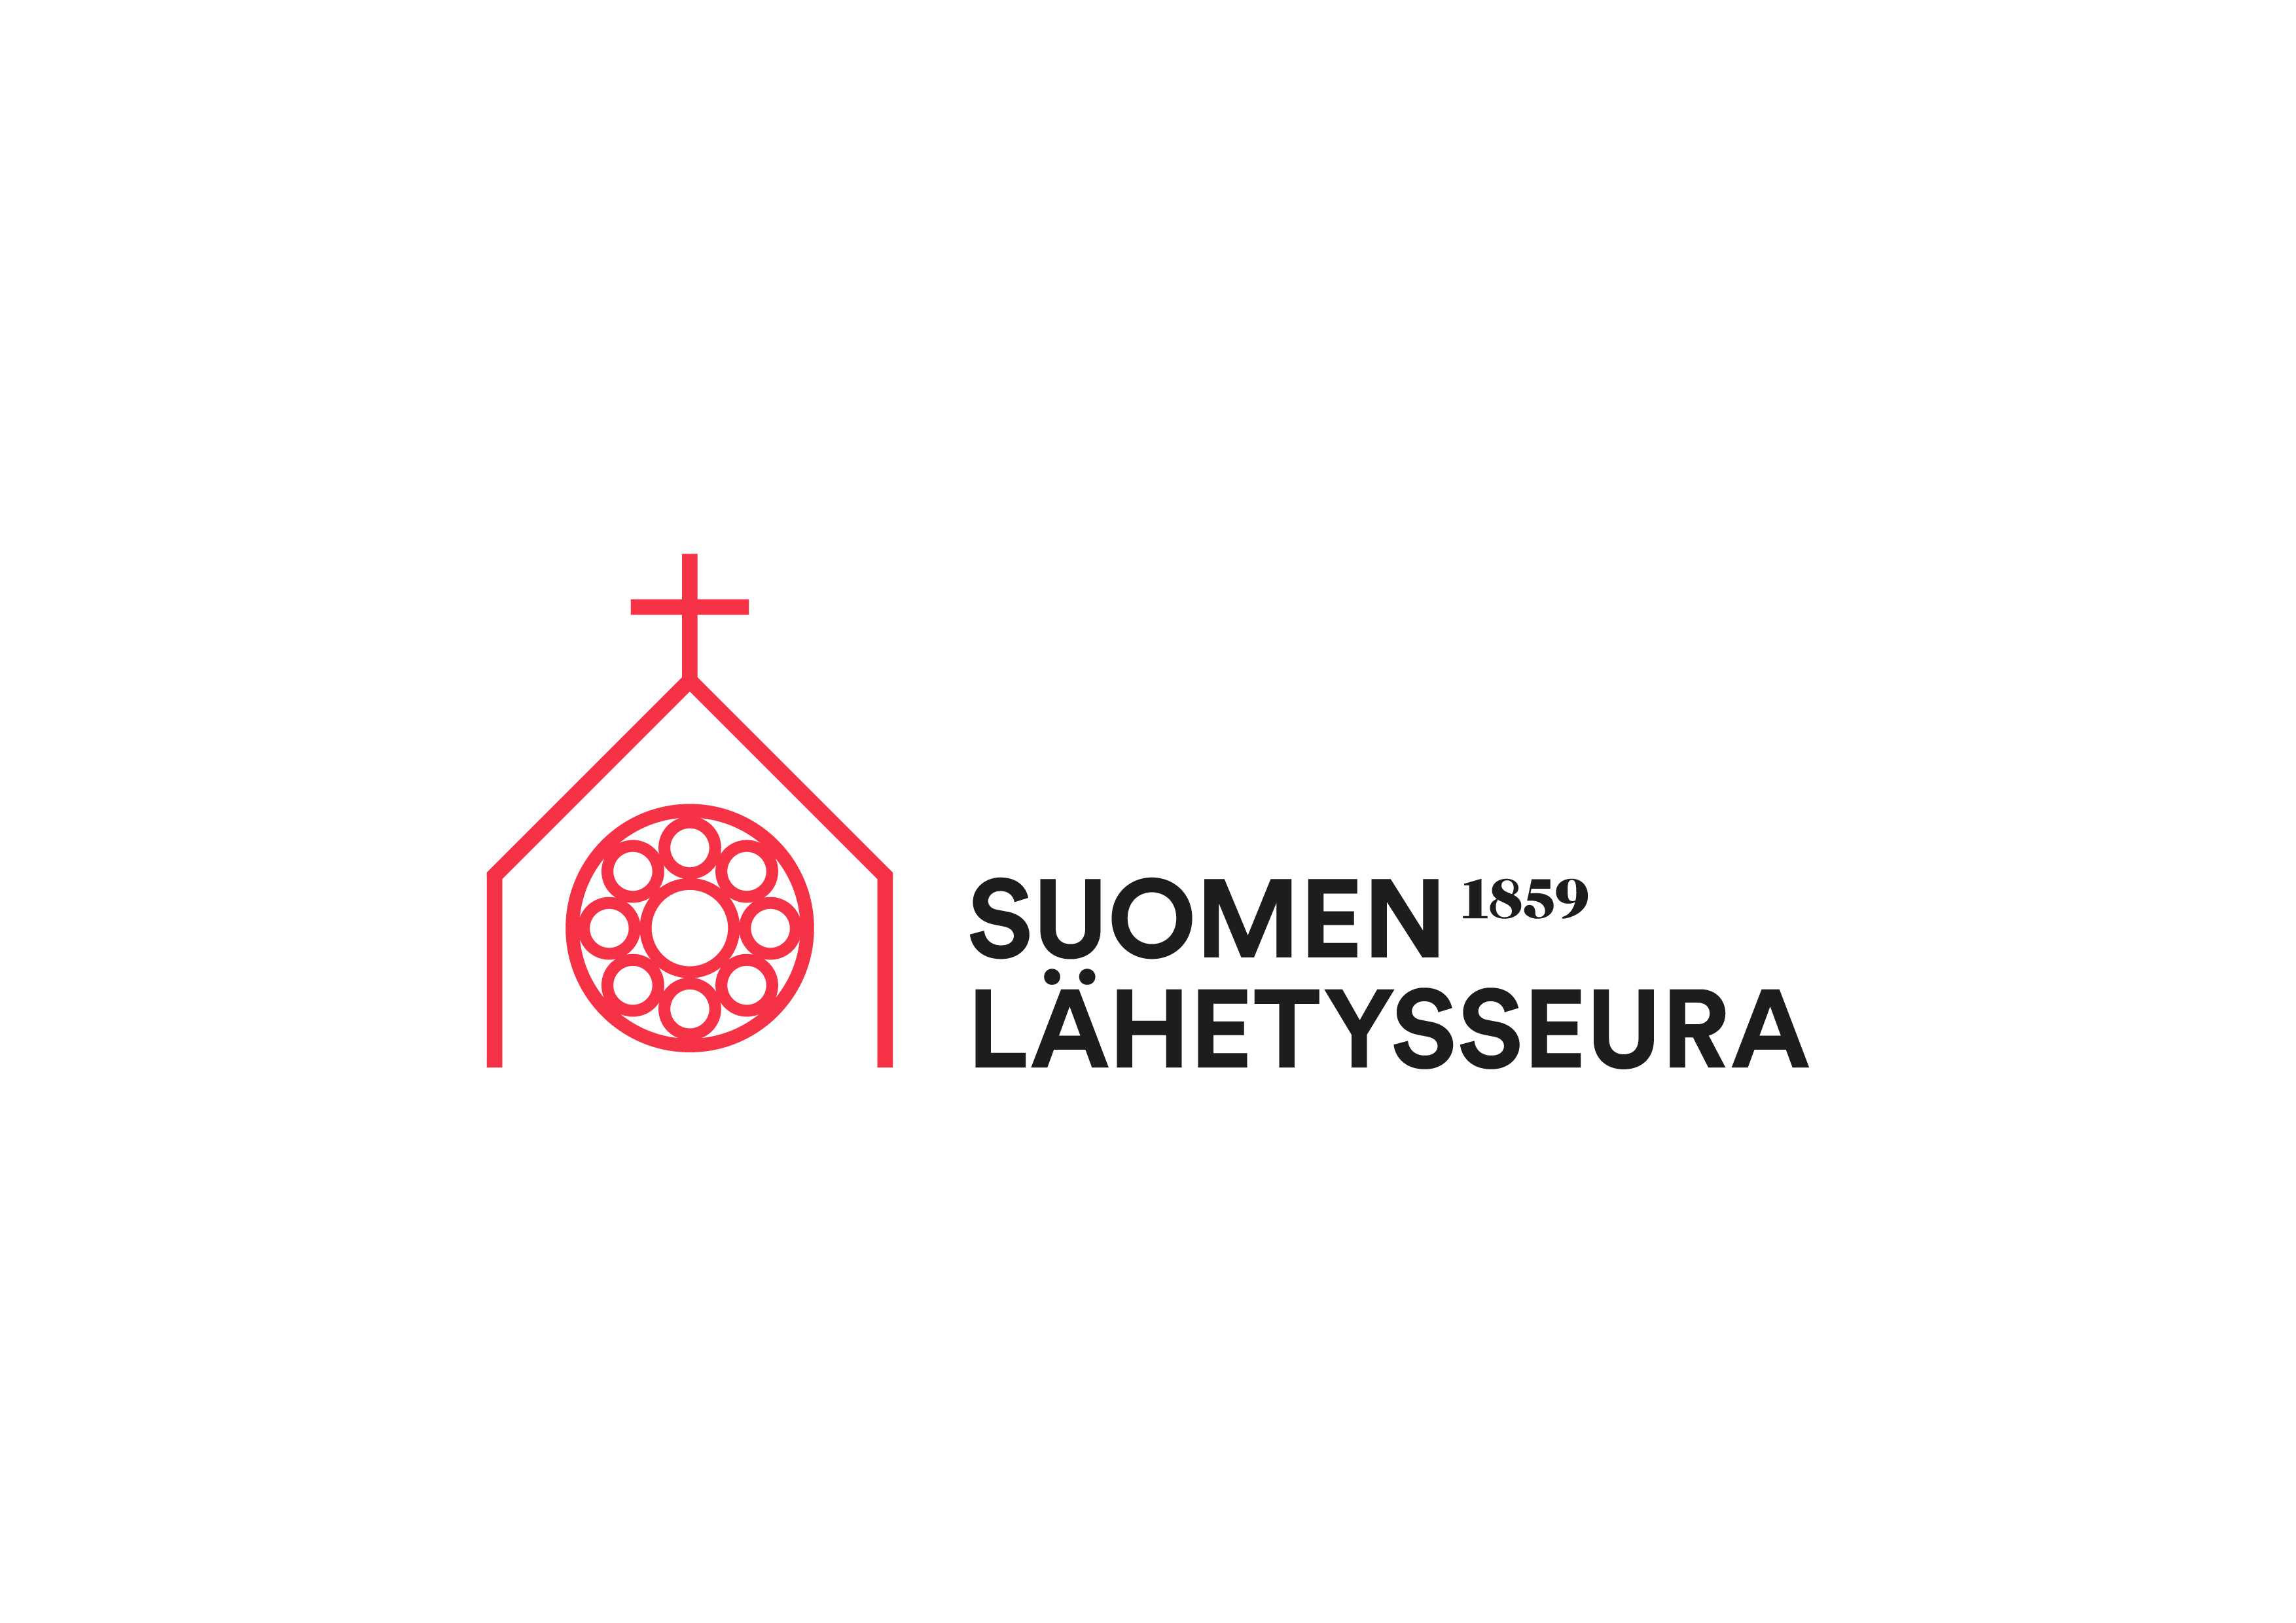 Suomen lähetysseuran logo ja vuosiluku 1859